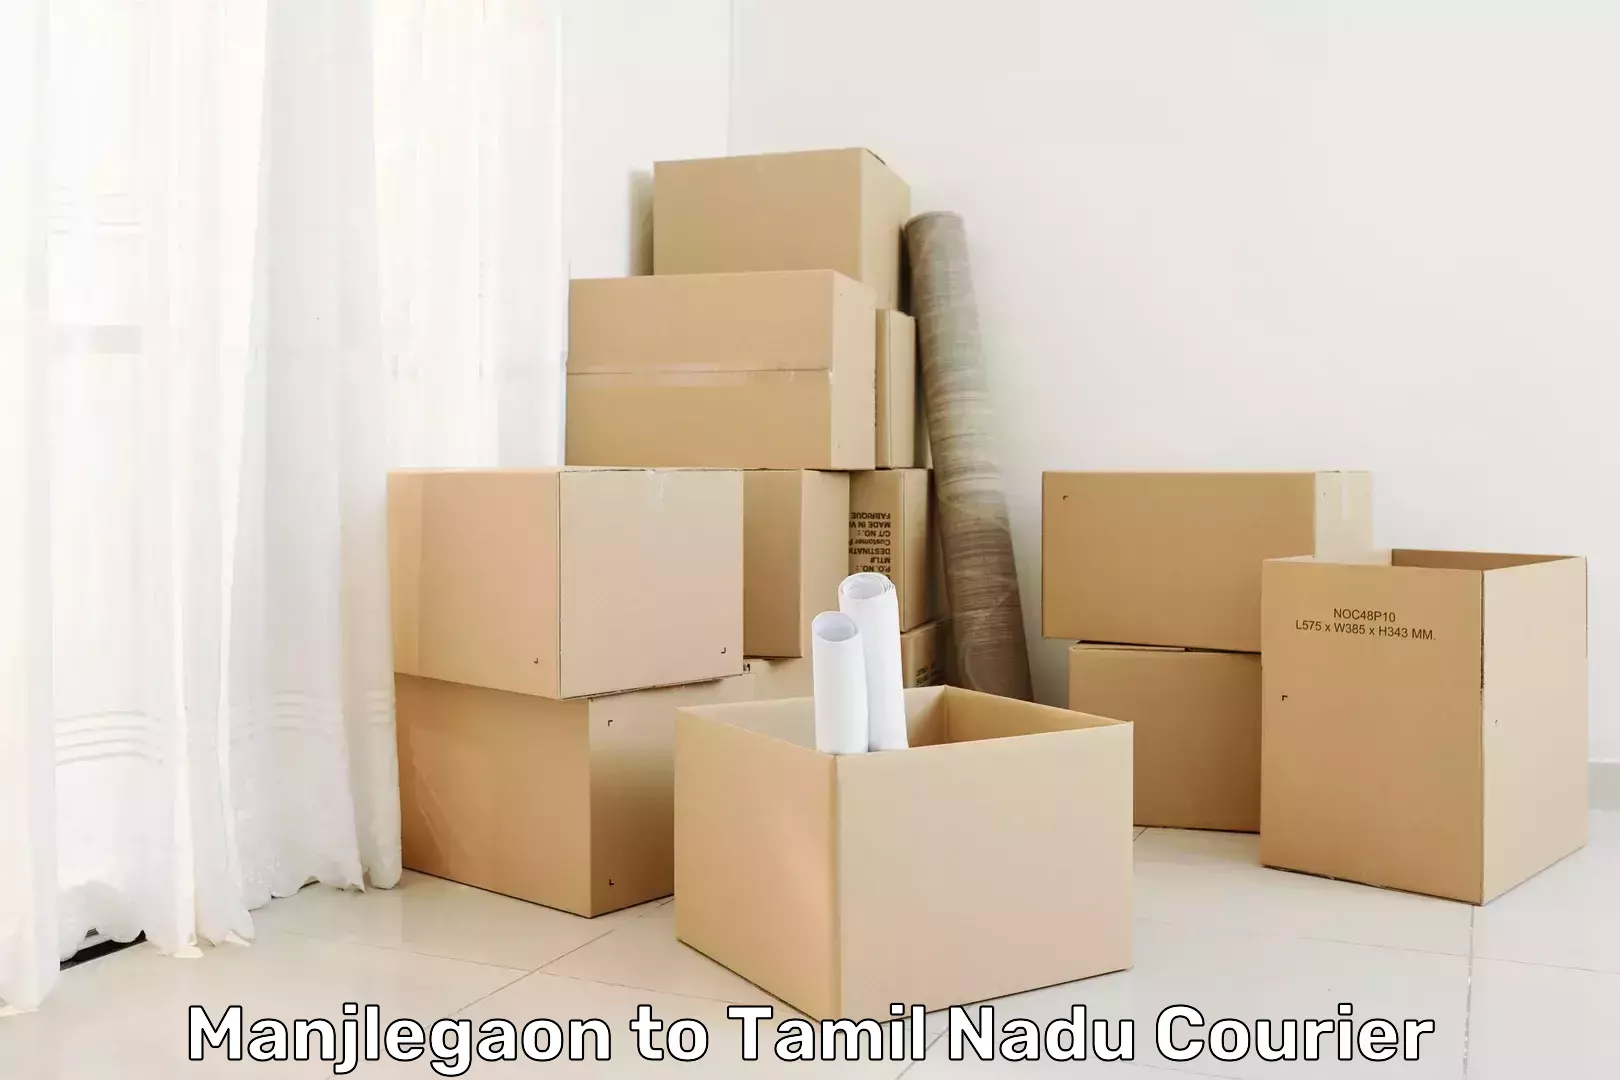 Logistics solutions Manjlegaon to Tamil Nadu